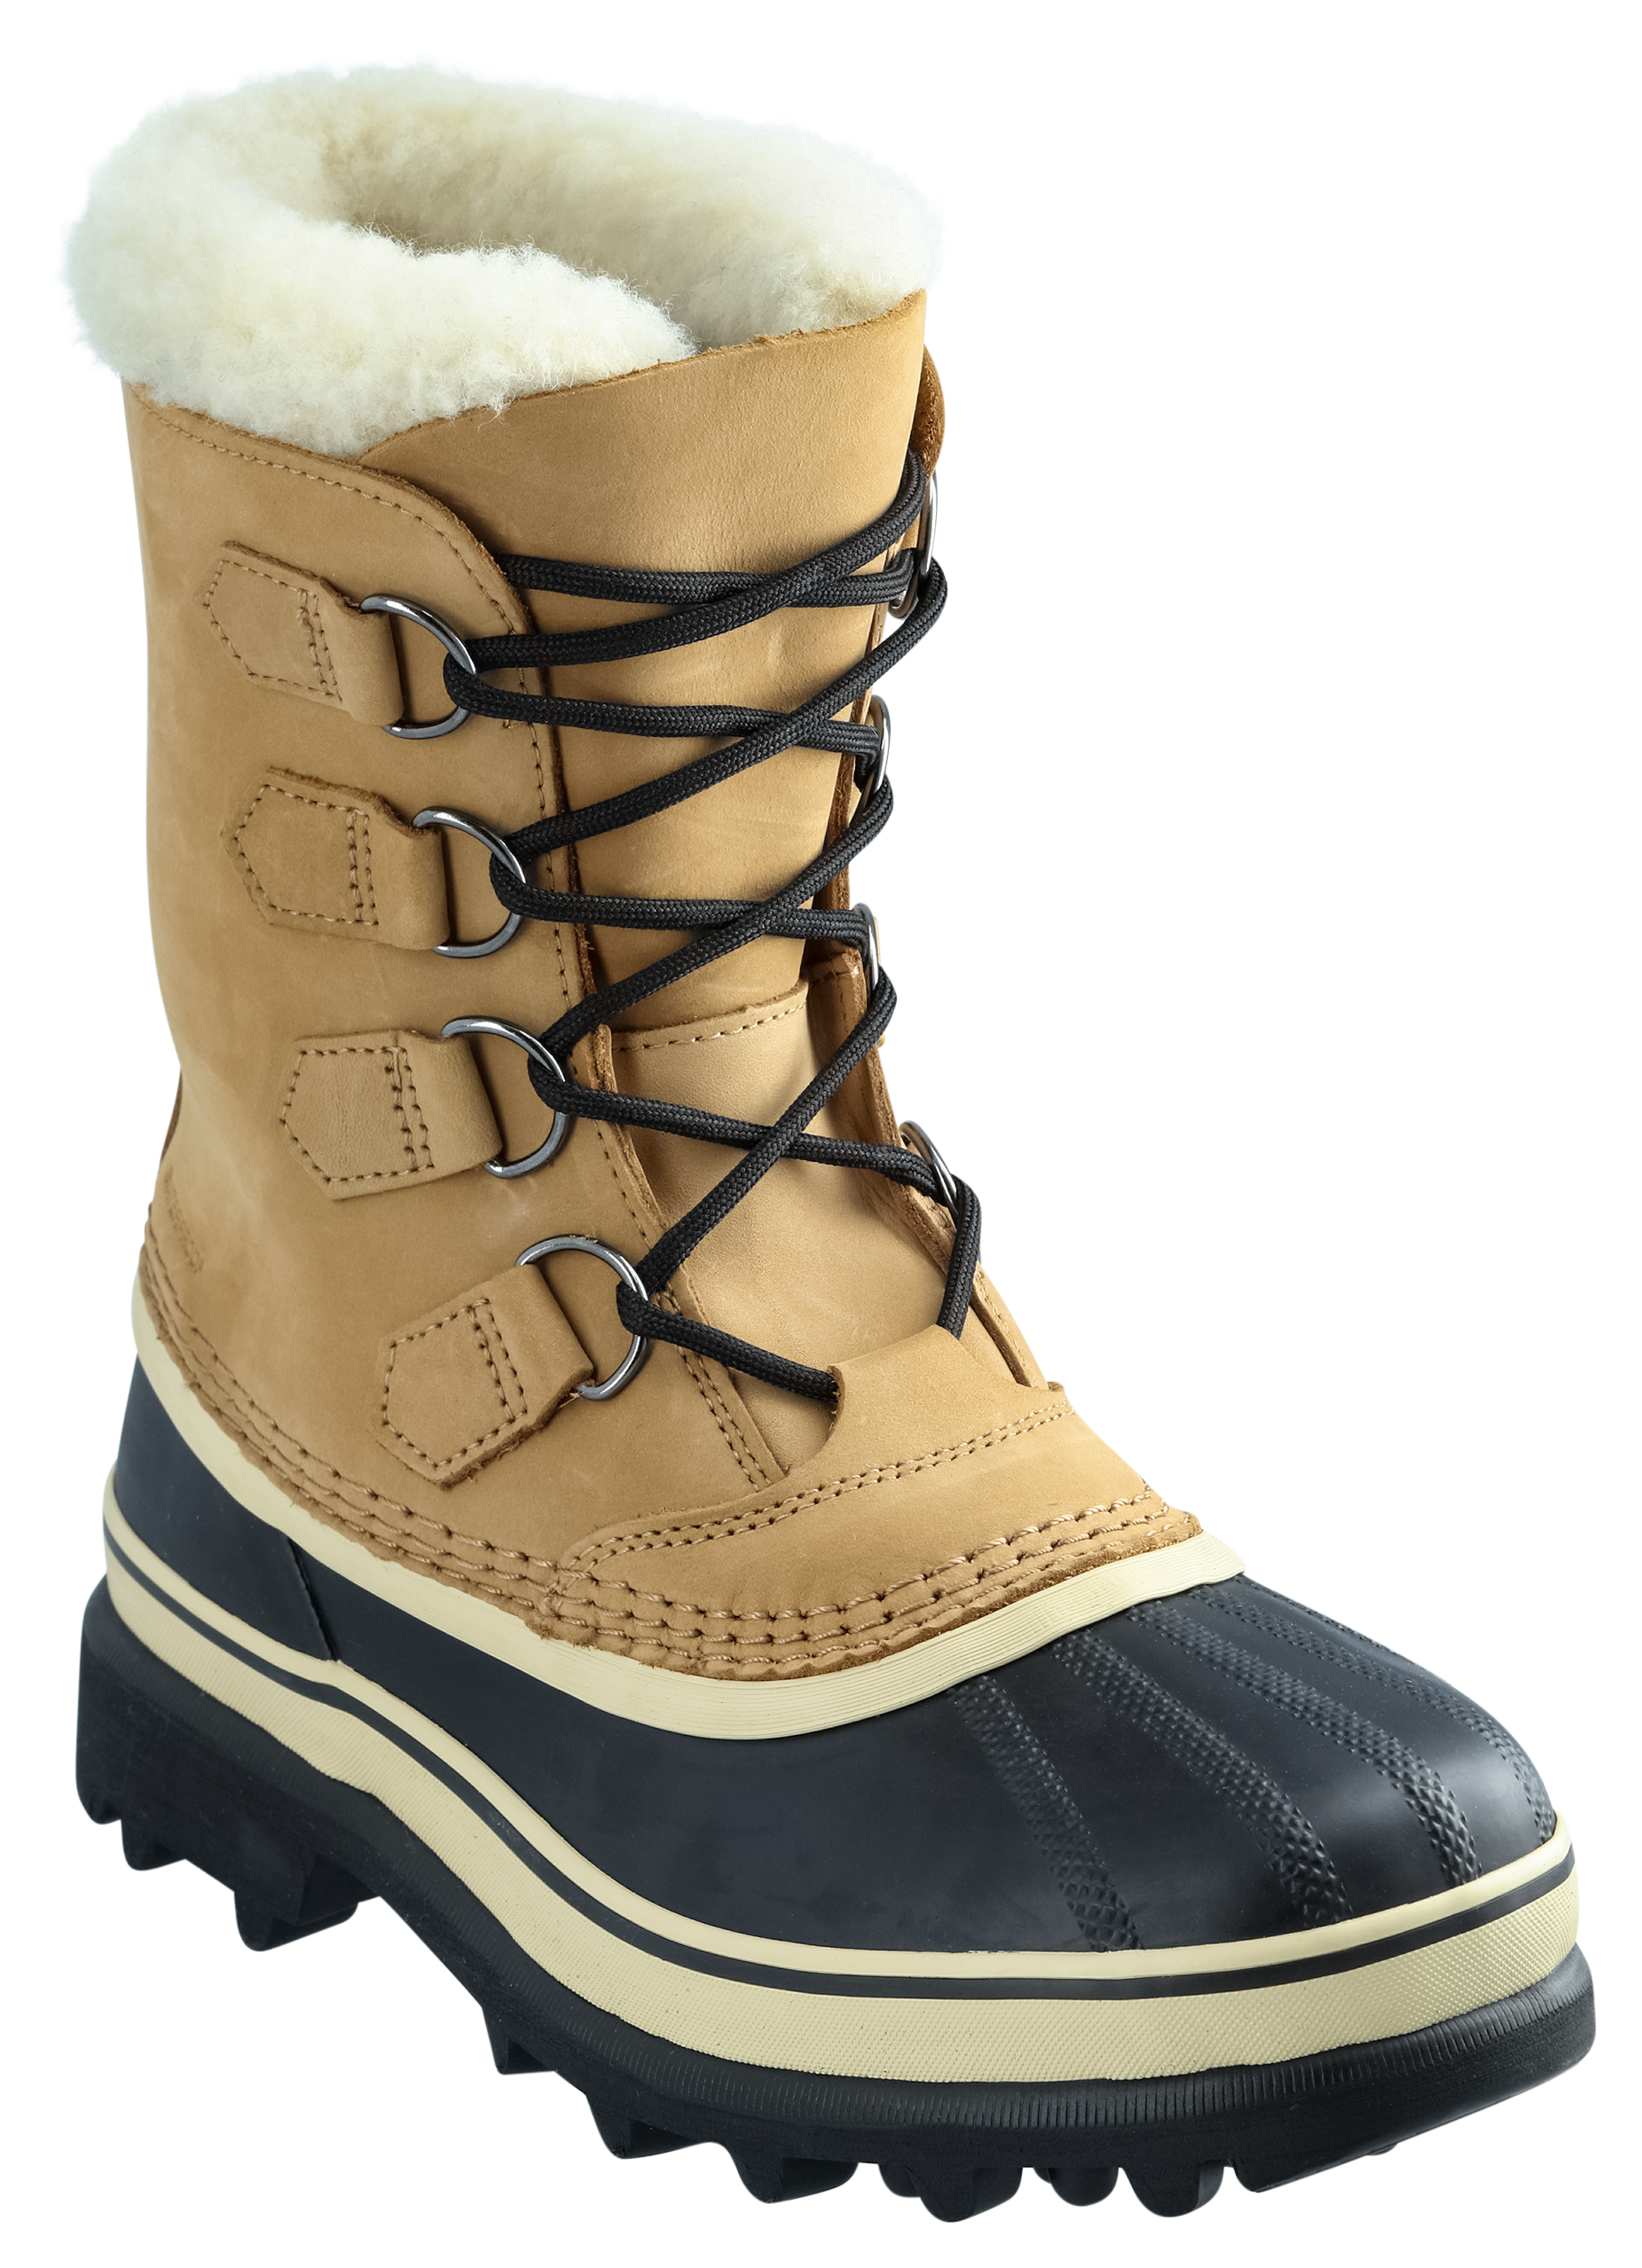 Veraangenamen Geheugen Onderdrukking Sorel Caribou Waterproof Pac Boots for Ladies | Cabela's